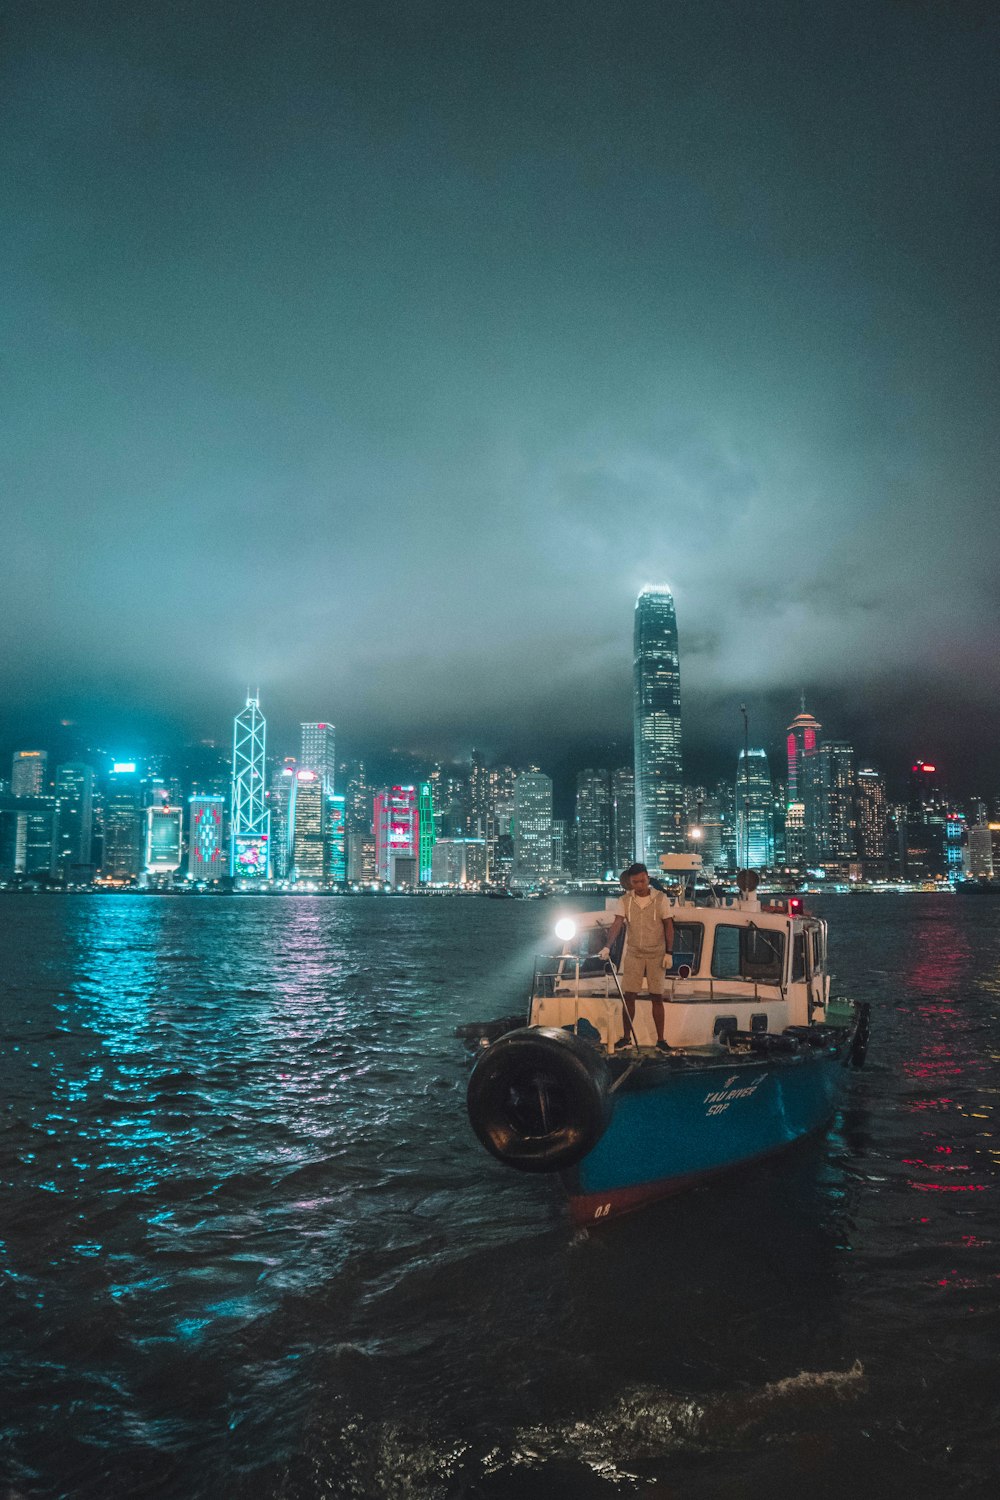 personne debout sur un bateau de pêche près des bâtiments la nuit